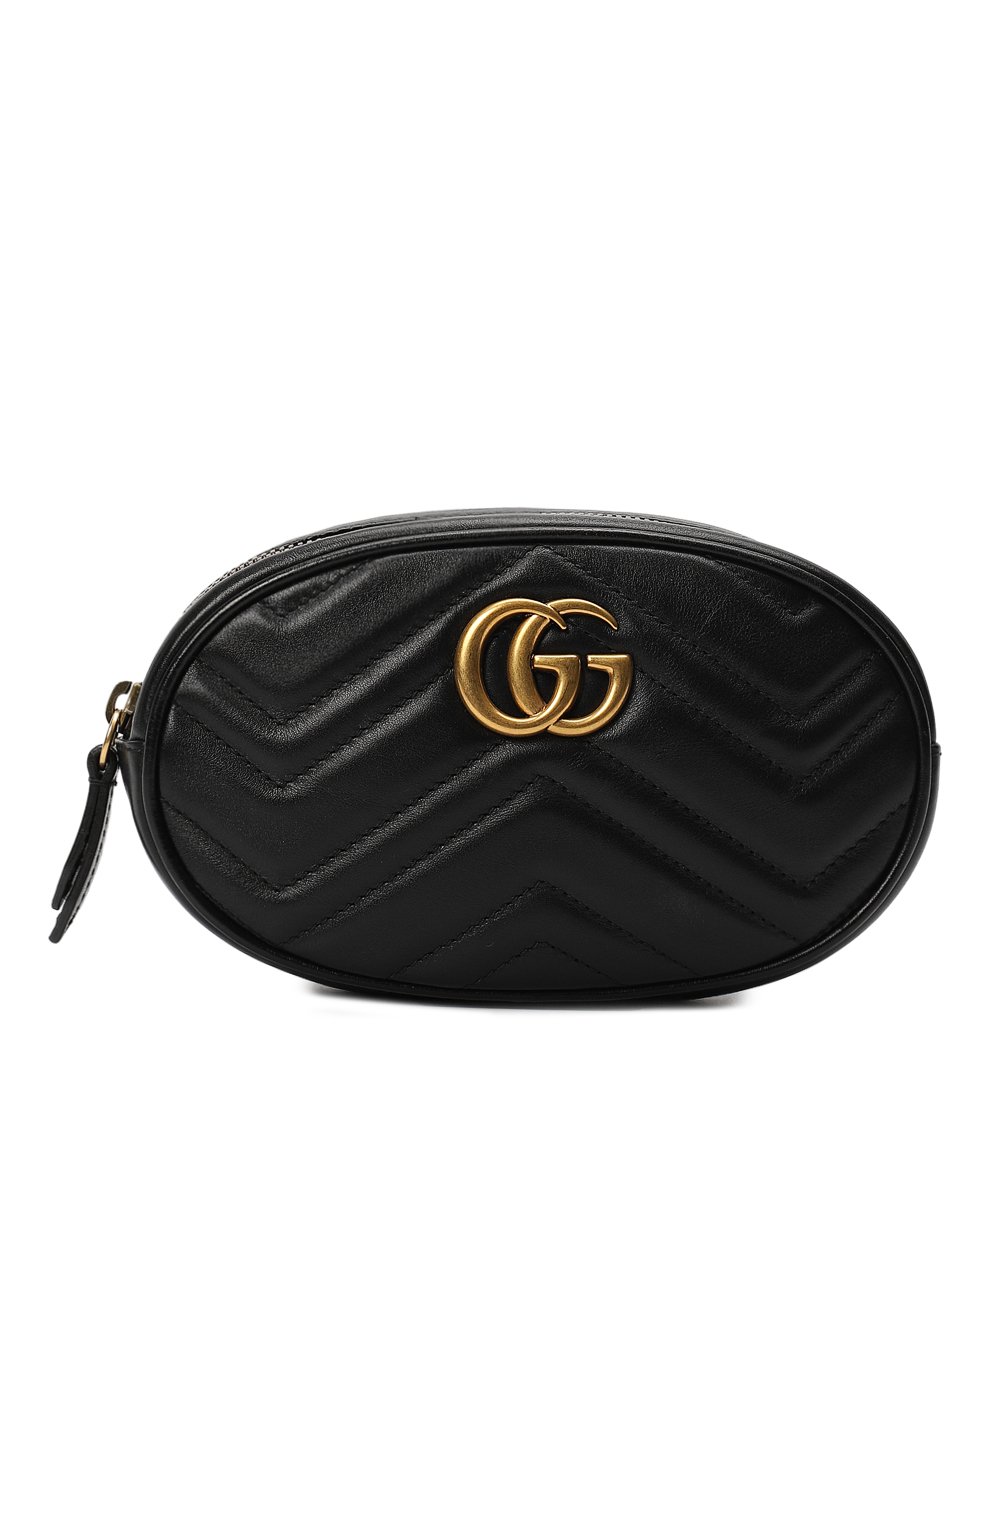 Поясная сумка GG Marmont | Gucci | Чёрный - 1